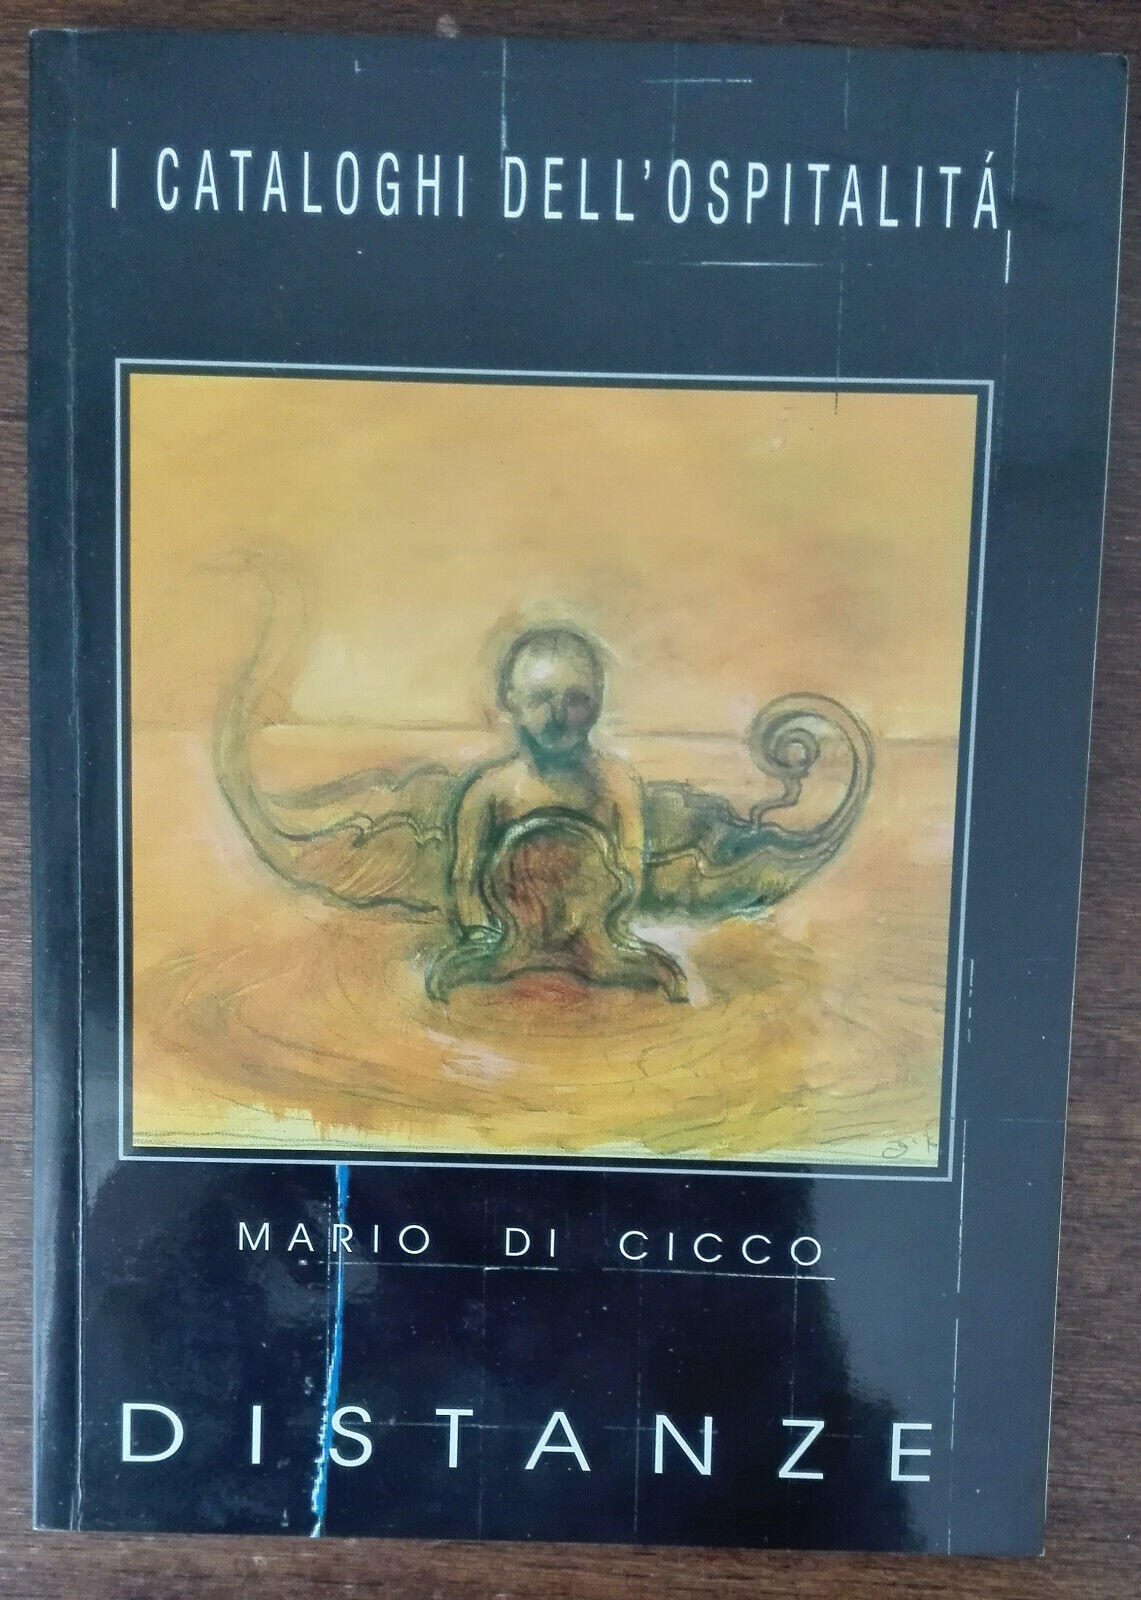 Distanze - Mario Di Cicco - Ge. Graf, 2006 - A